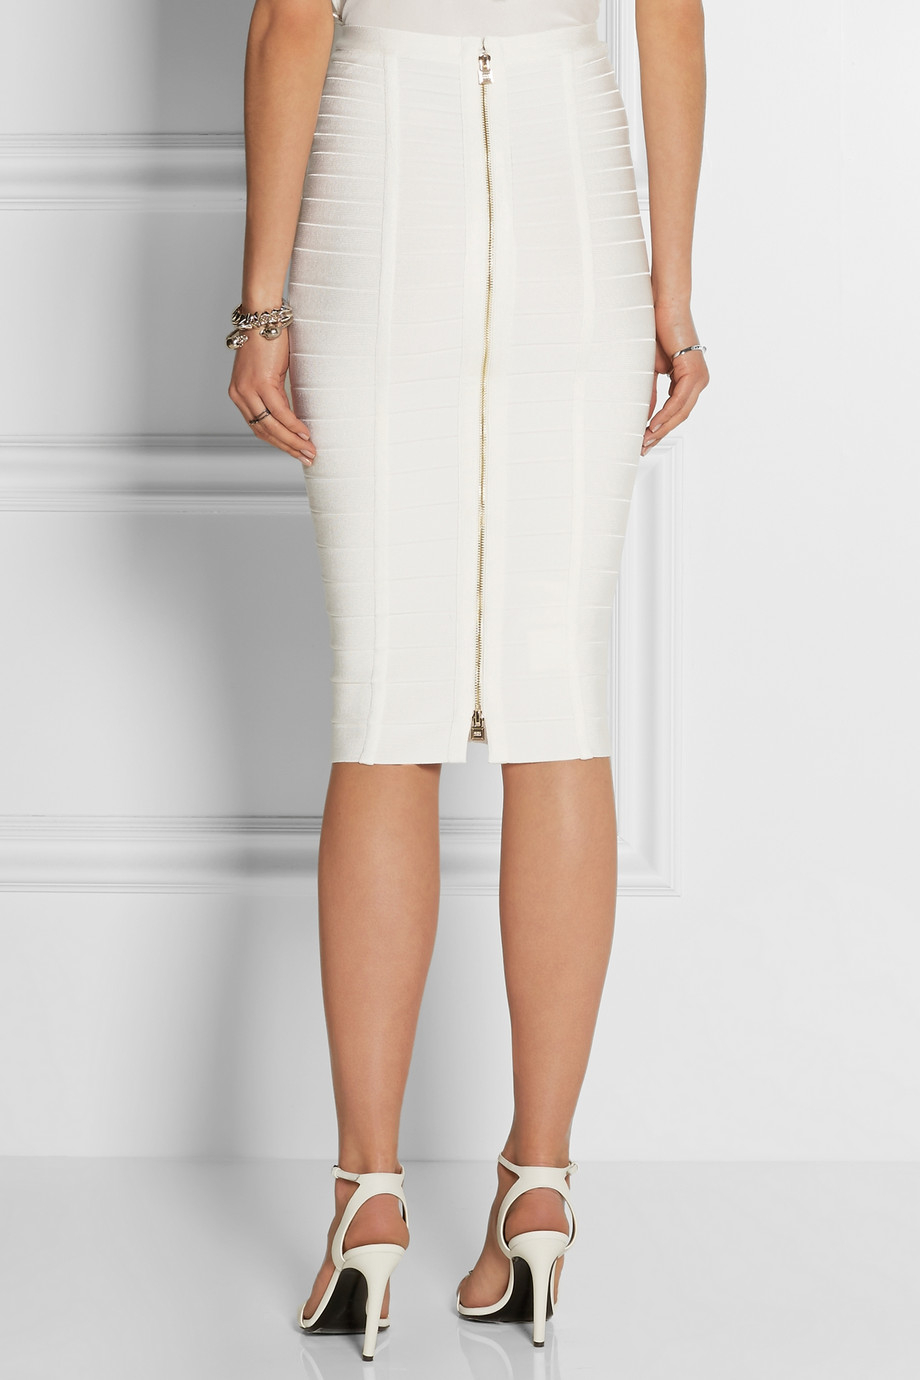 Hervé Léger Highwaisted Bandage Skirt in White | Lyst